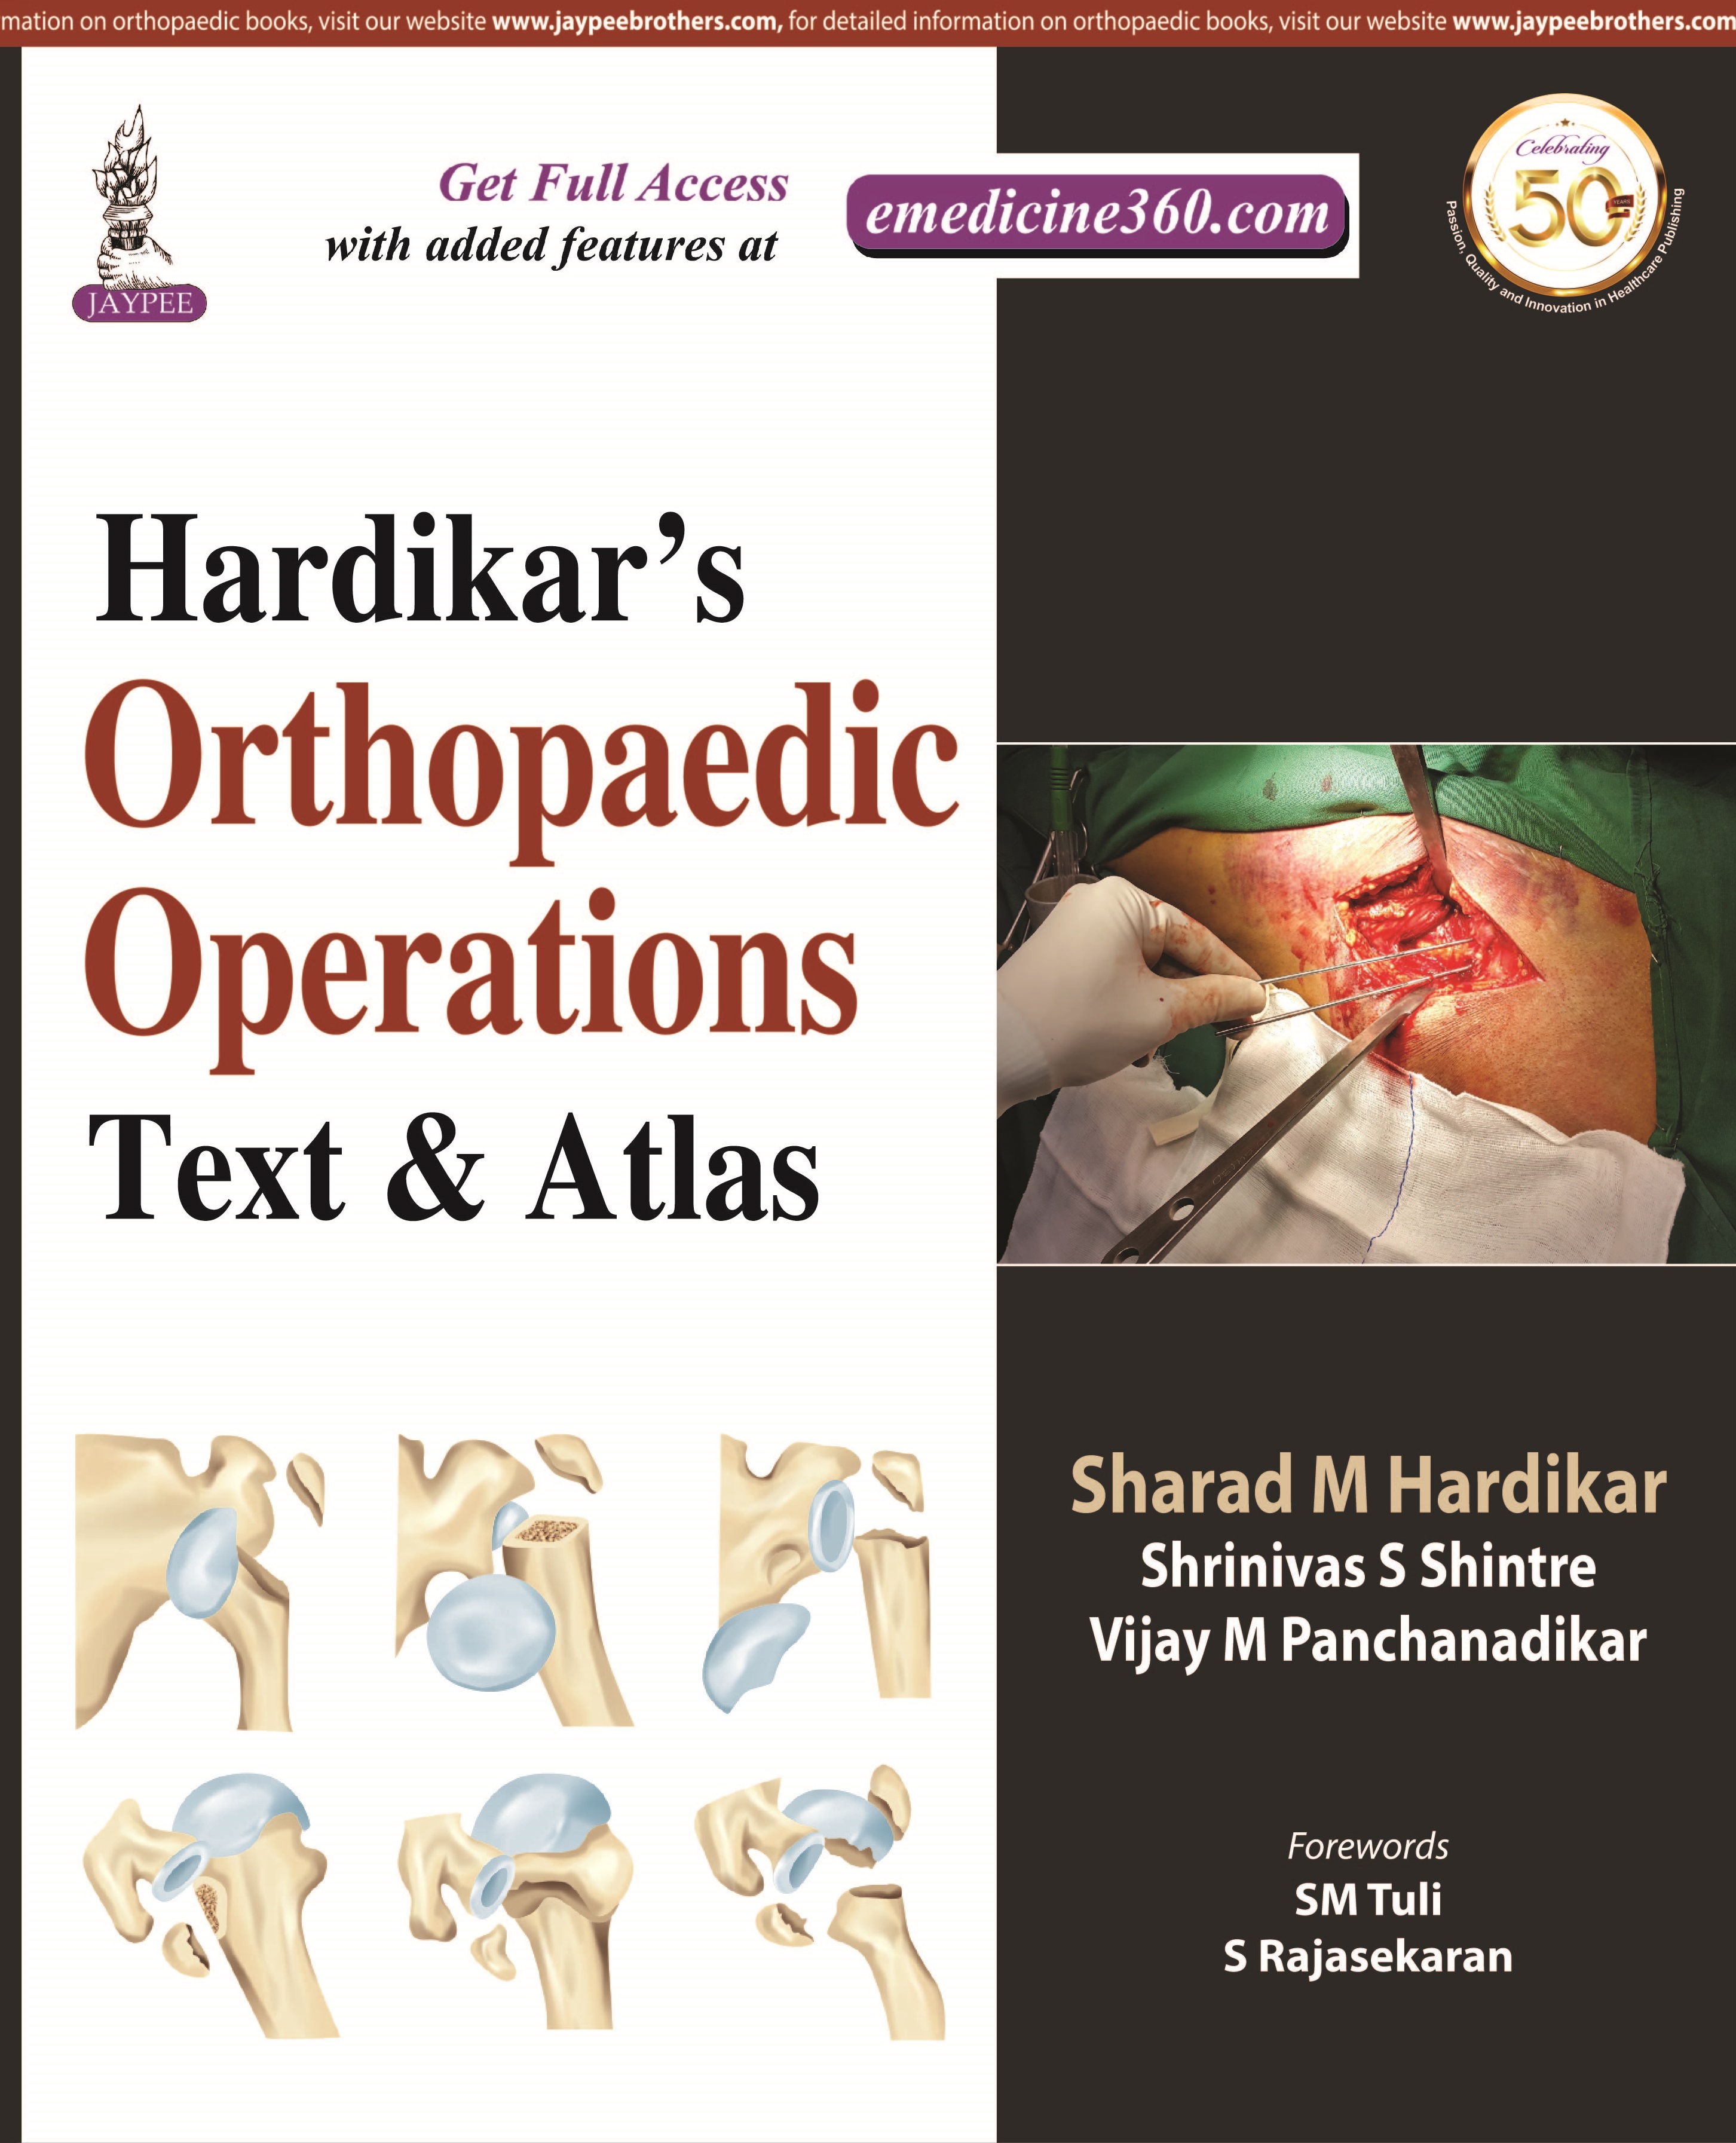 Hardikar's Orthopaedic Operations: Text & Atlas